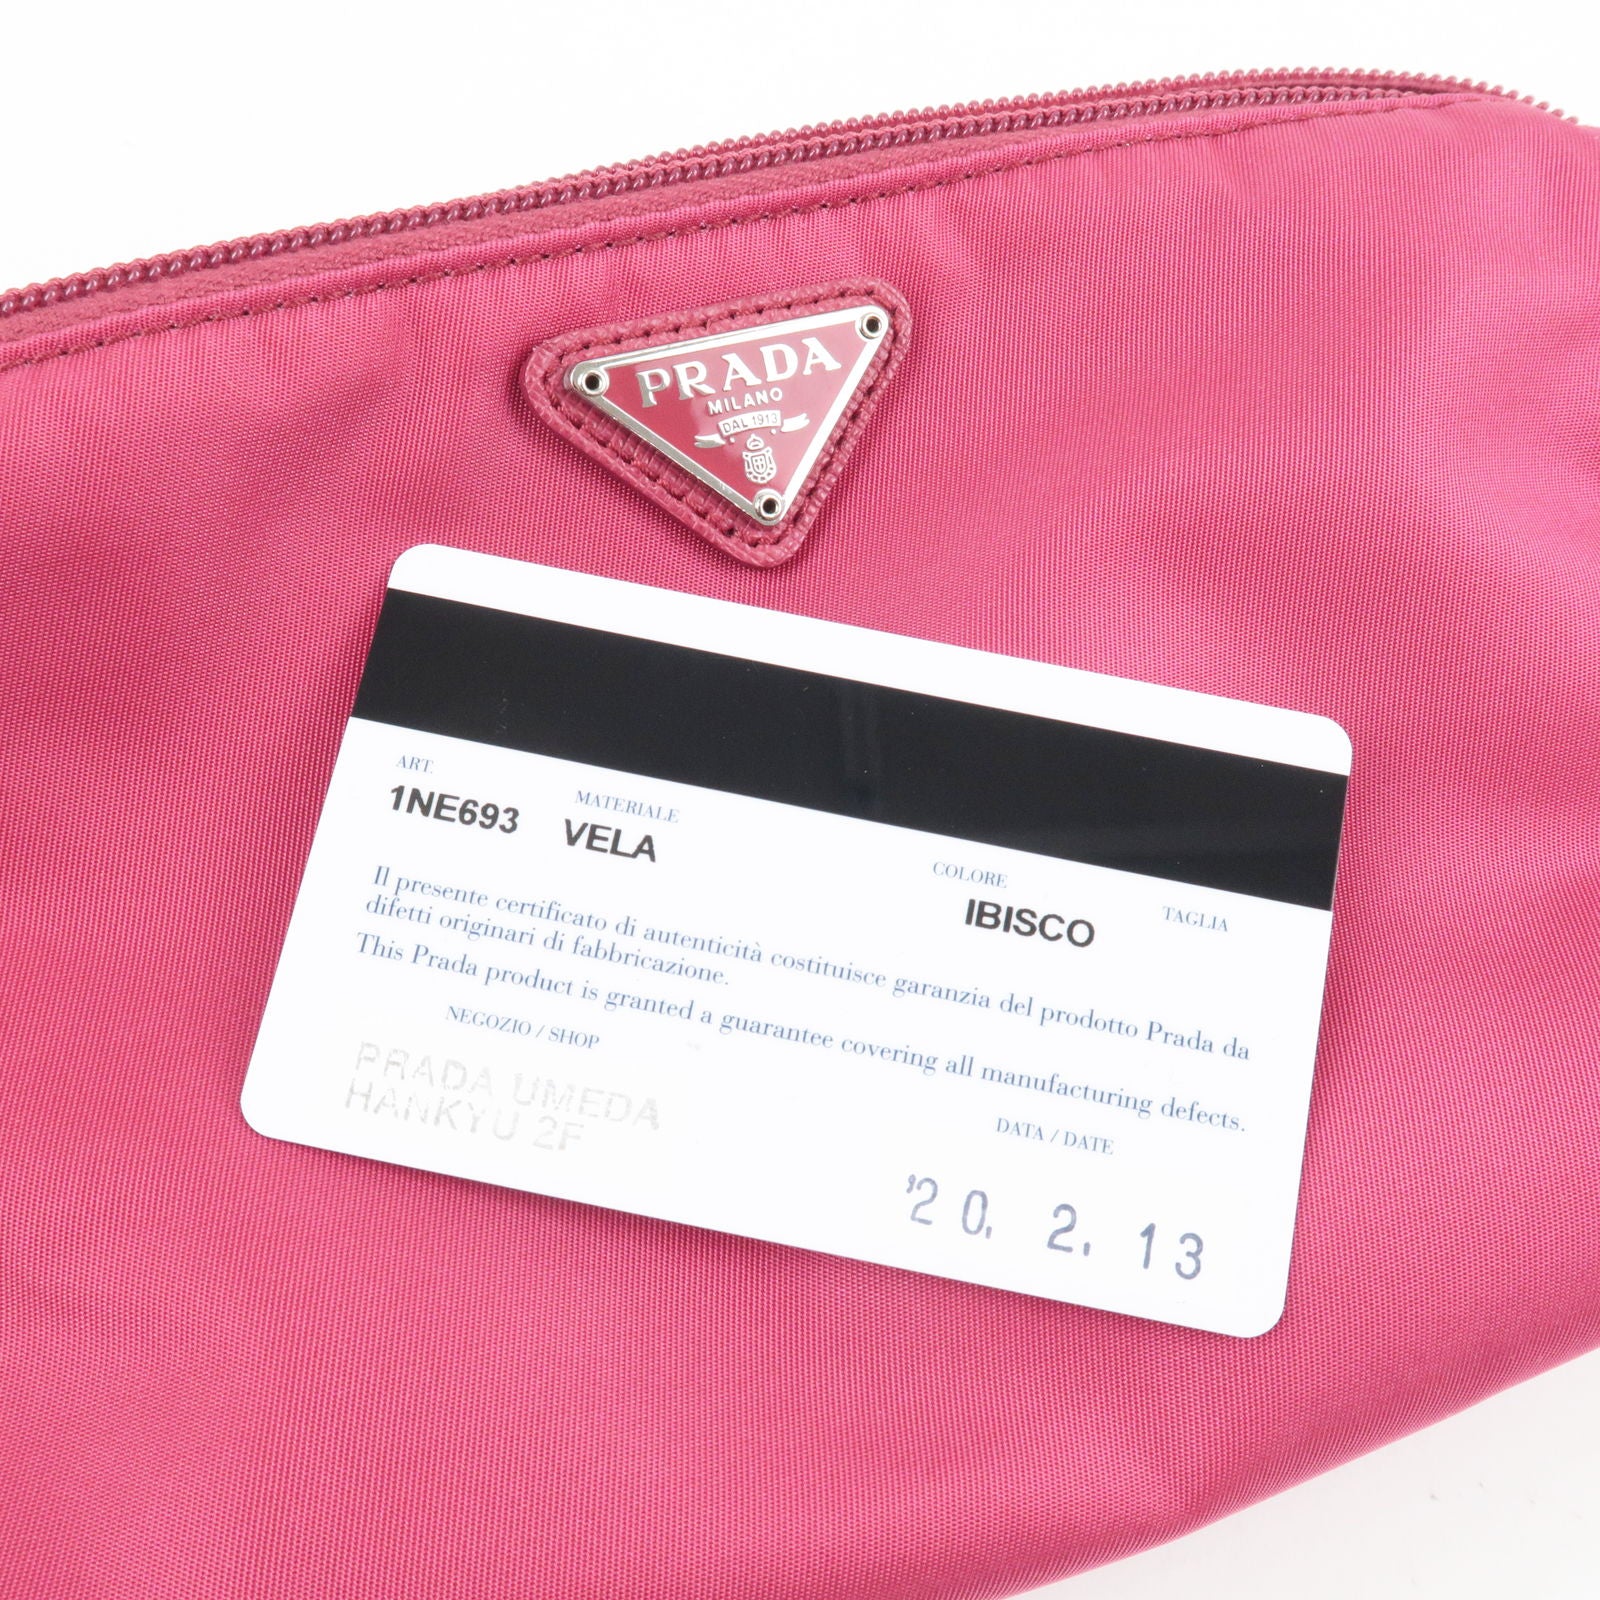 Prada Leather logo-detail Card Holder - Pink